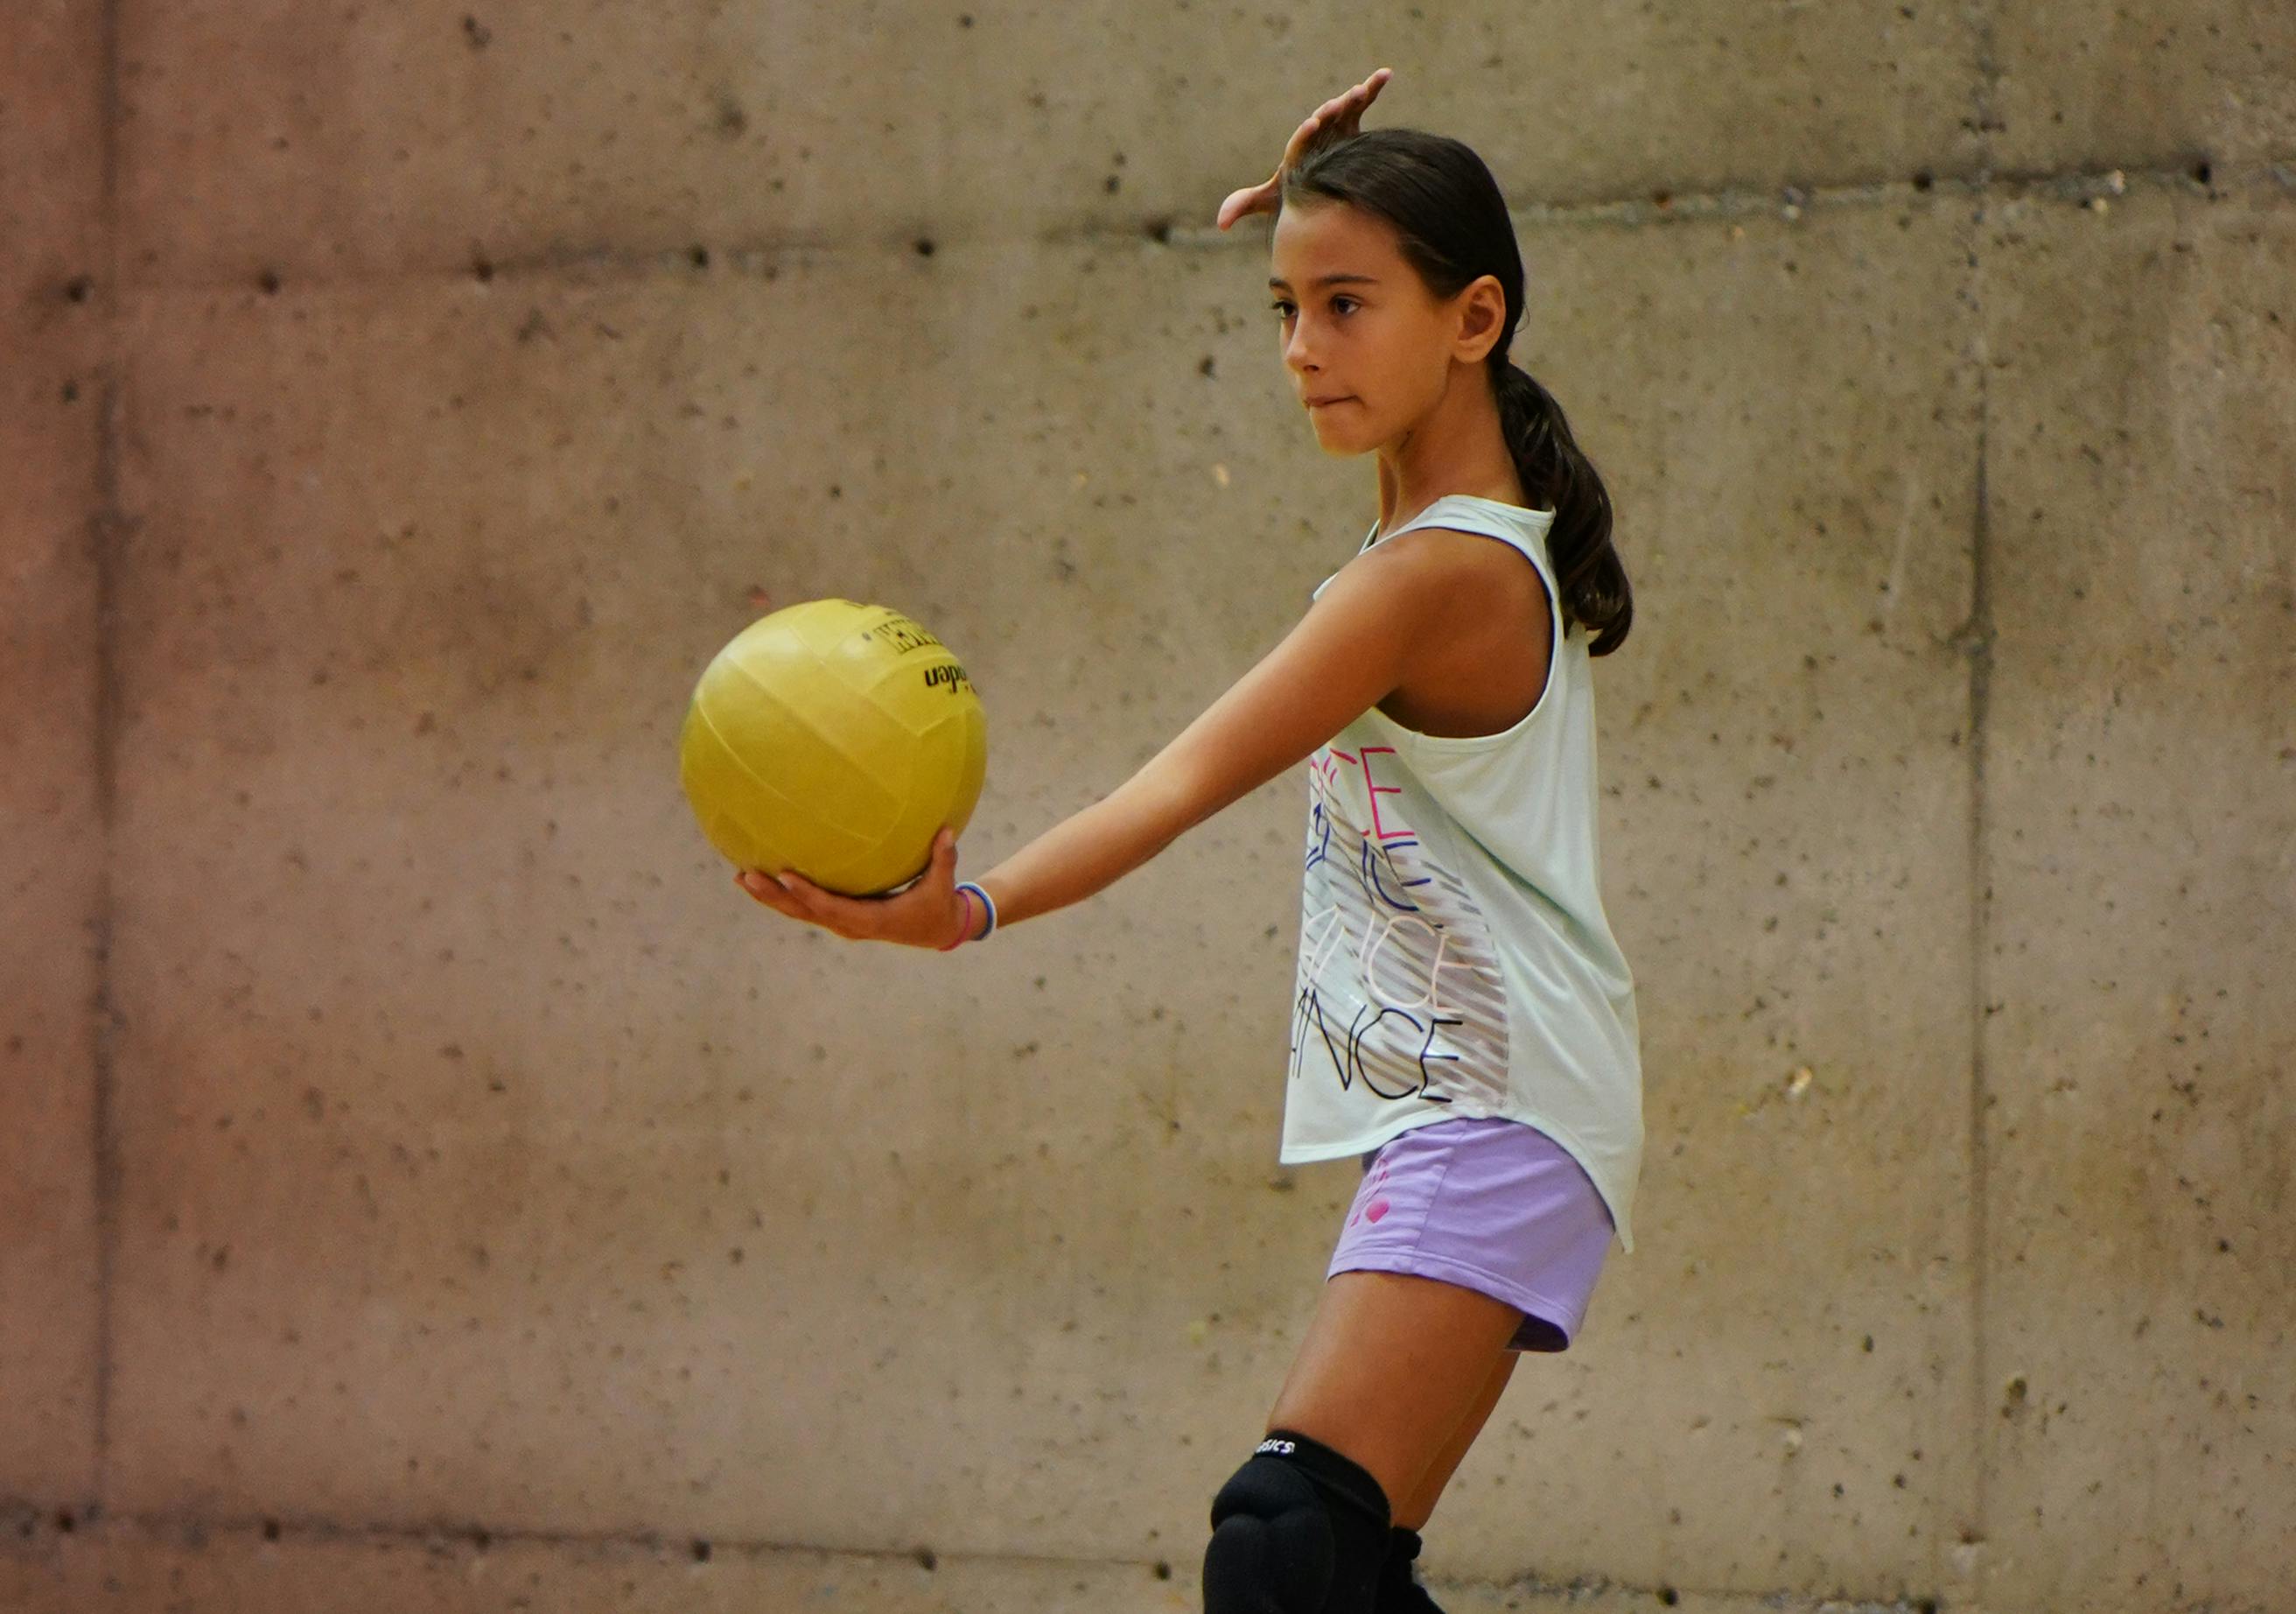 Volleyball 9 à 12 ans | Activités jeunesse au CEPSUM